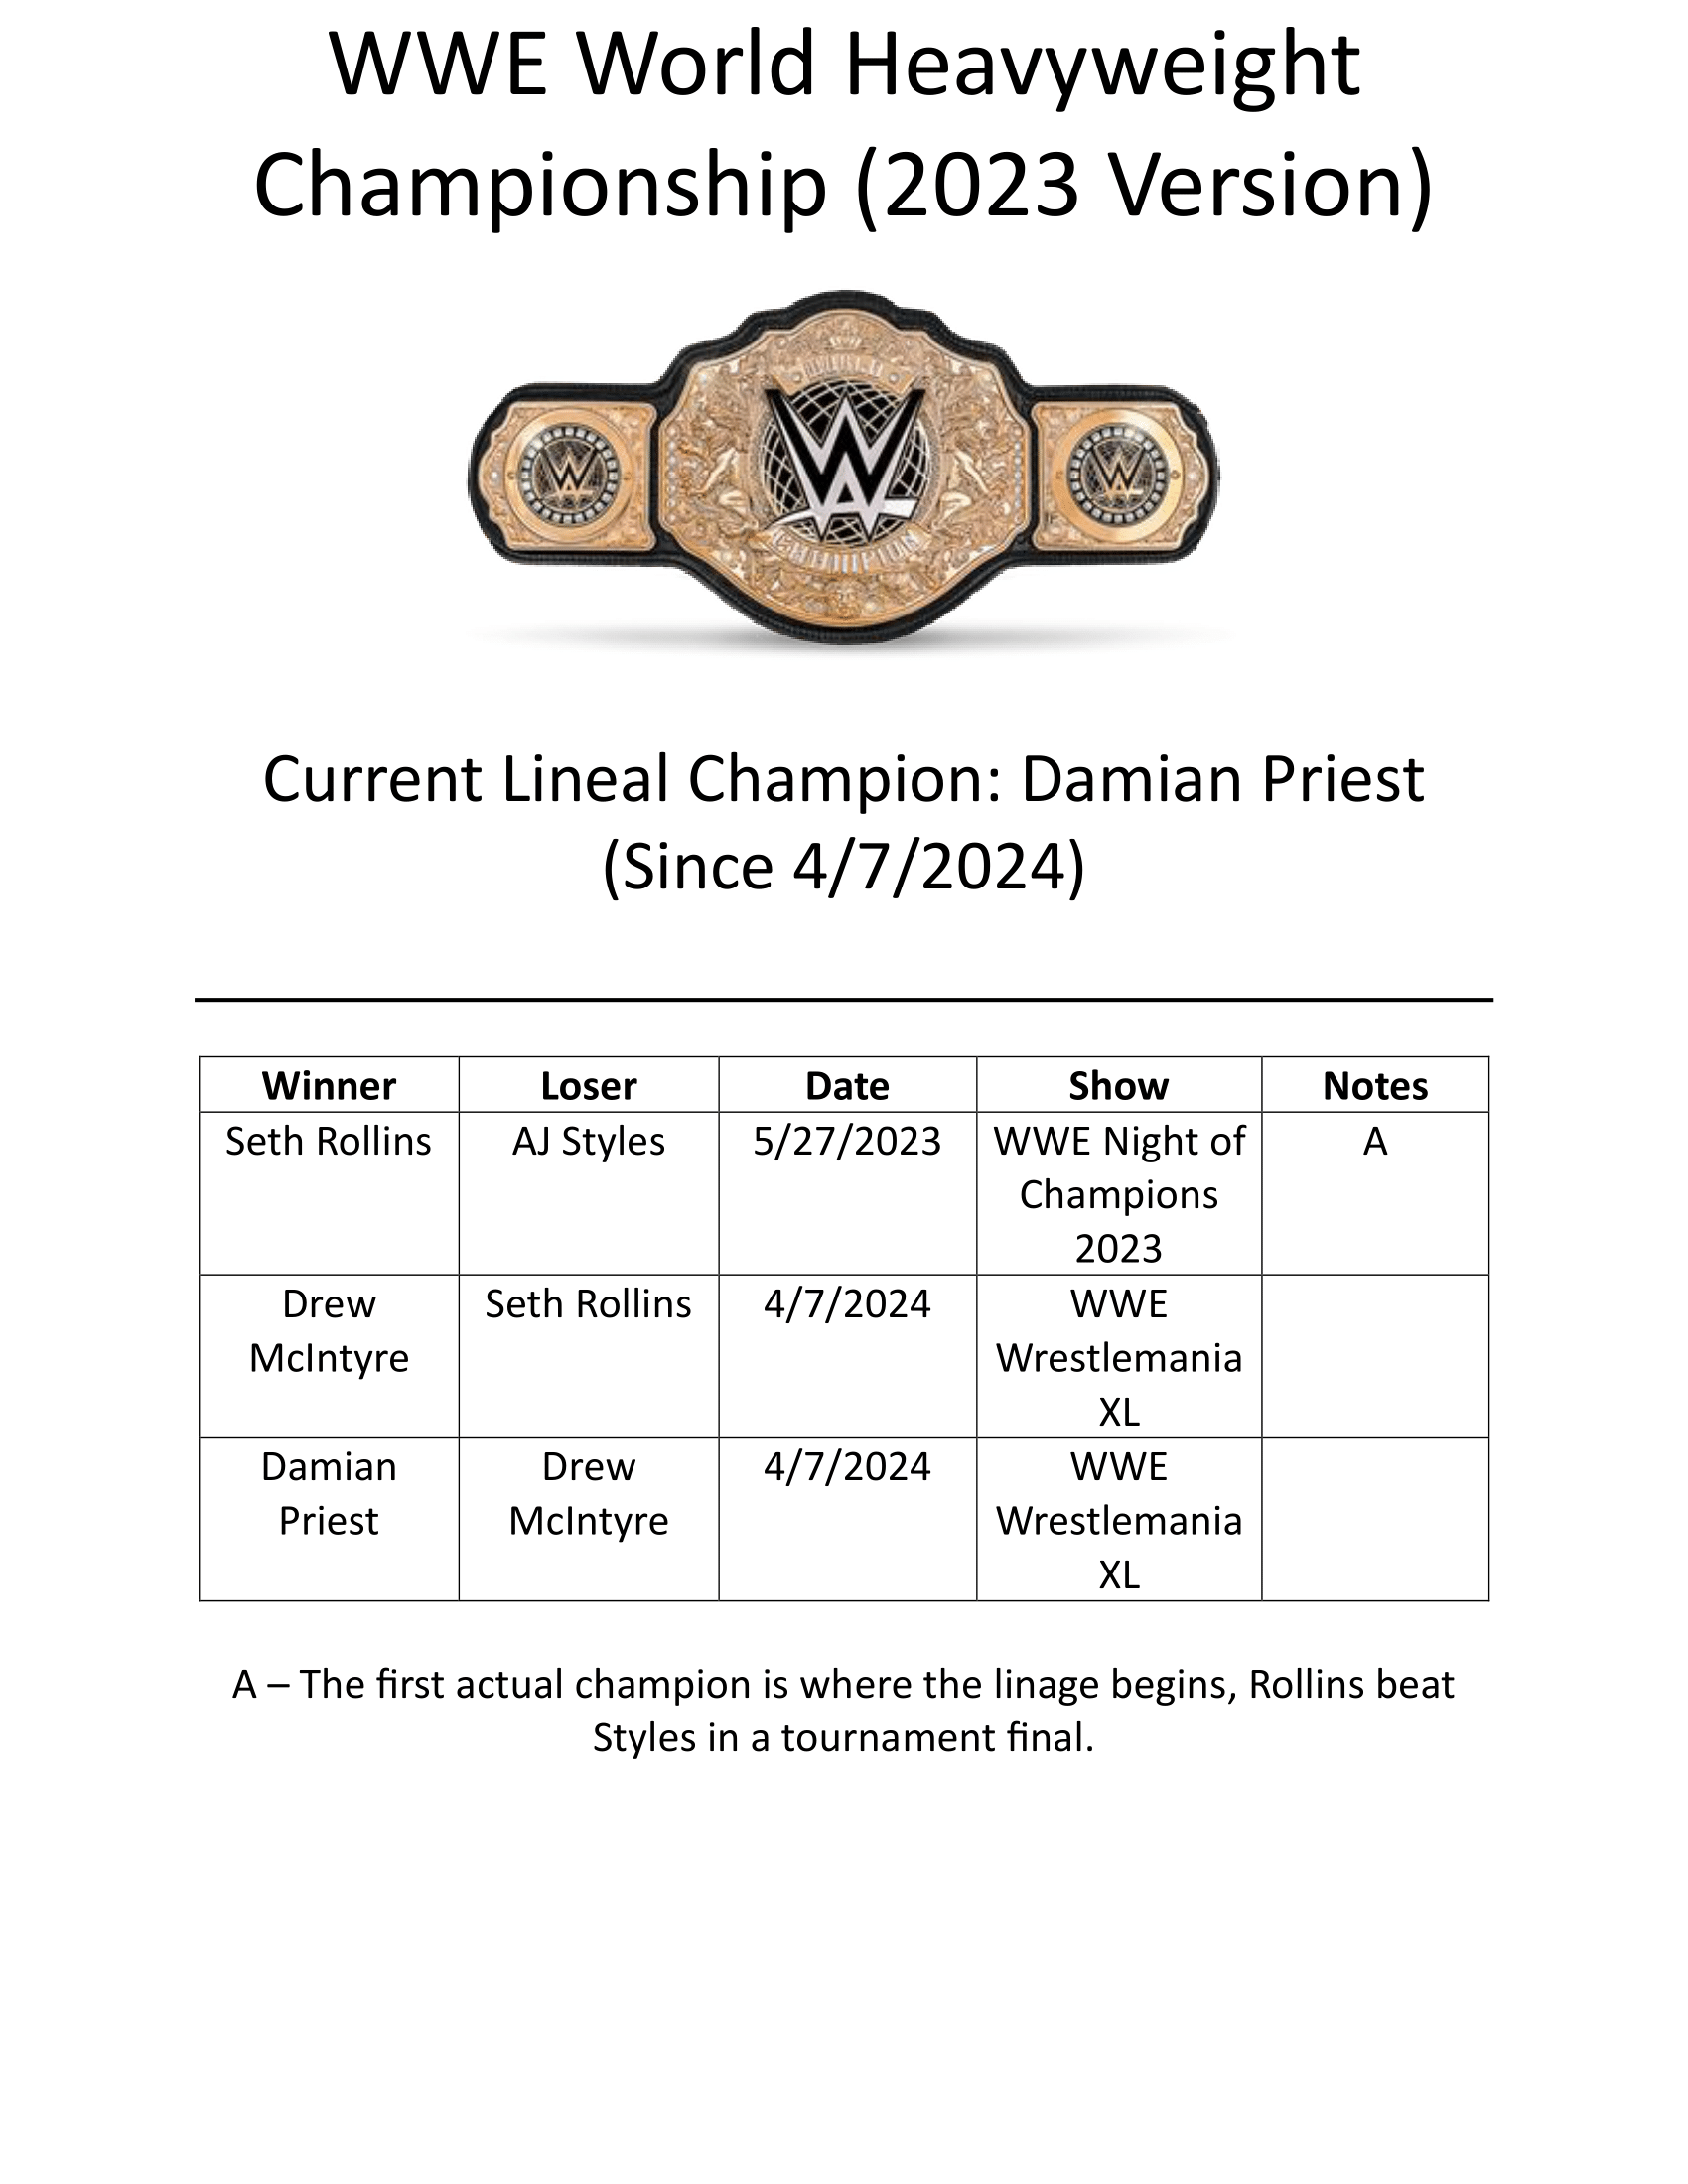 WWE-World-Heavyweight-Championship-2023-Version-1.png